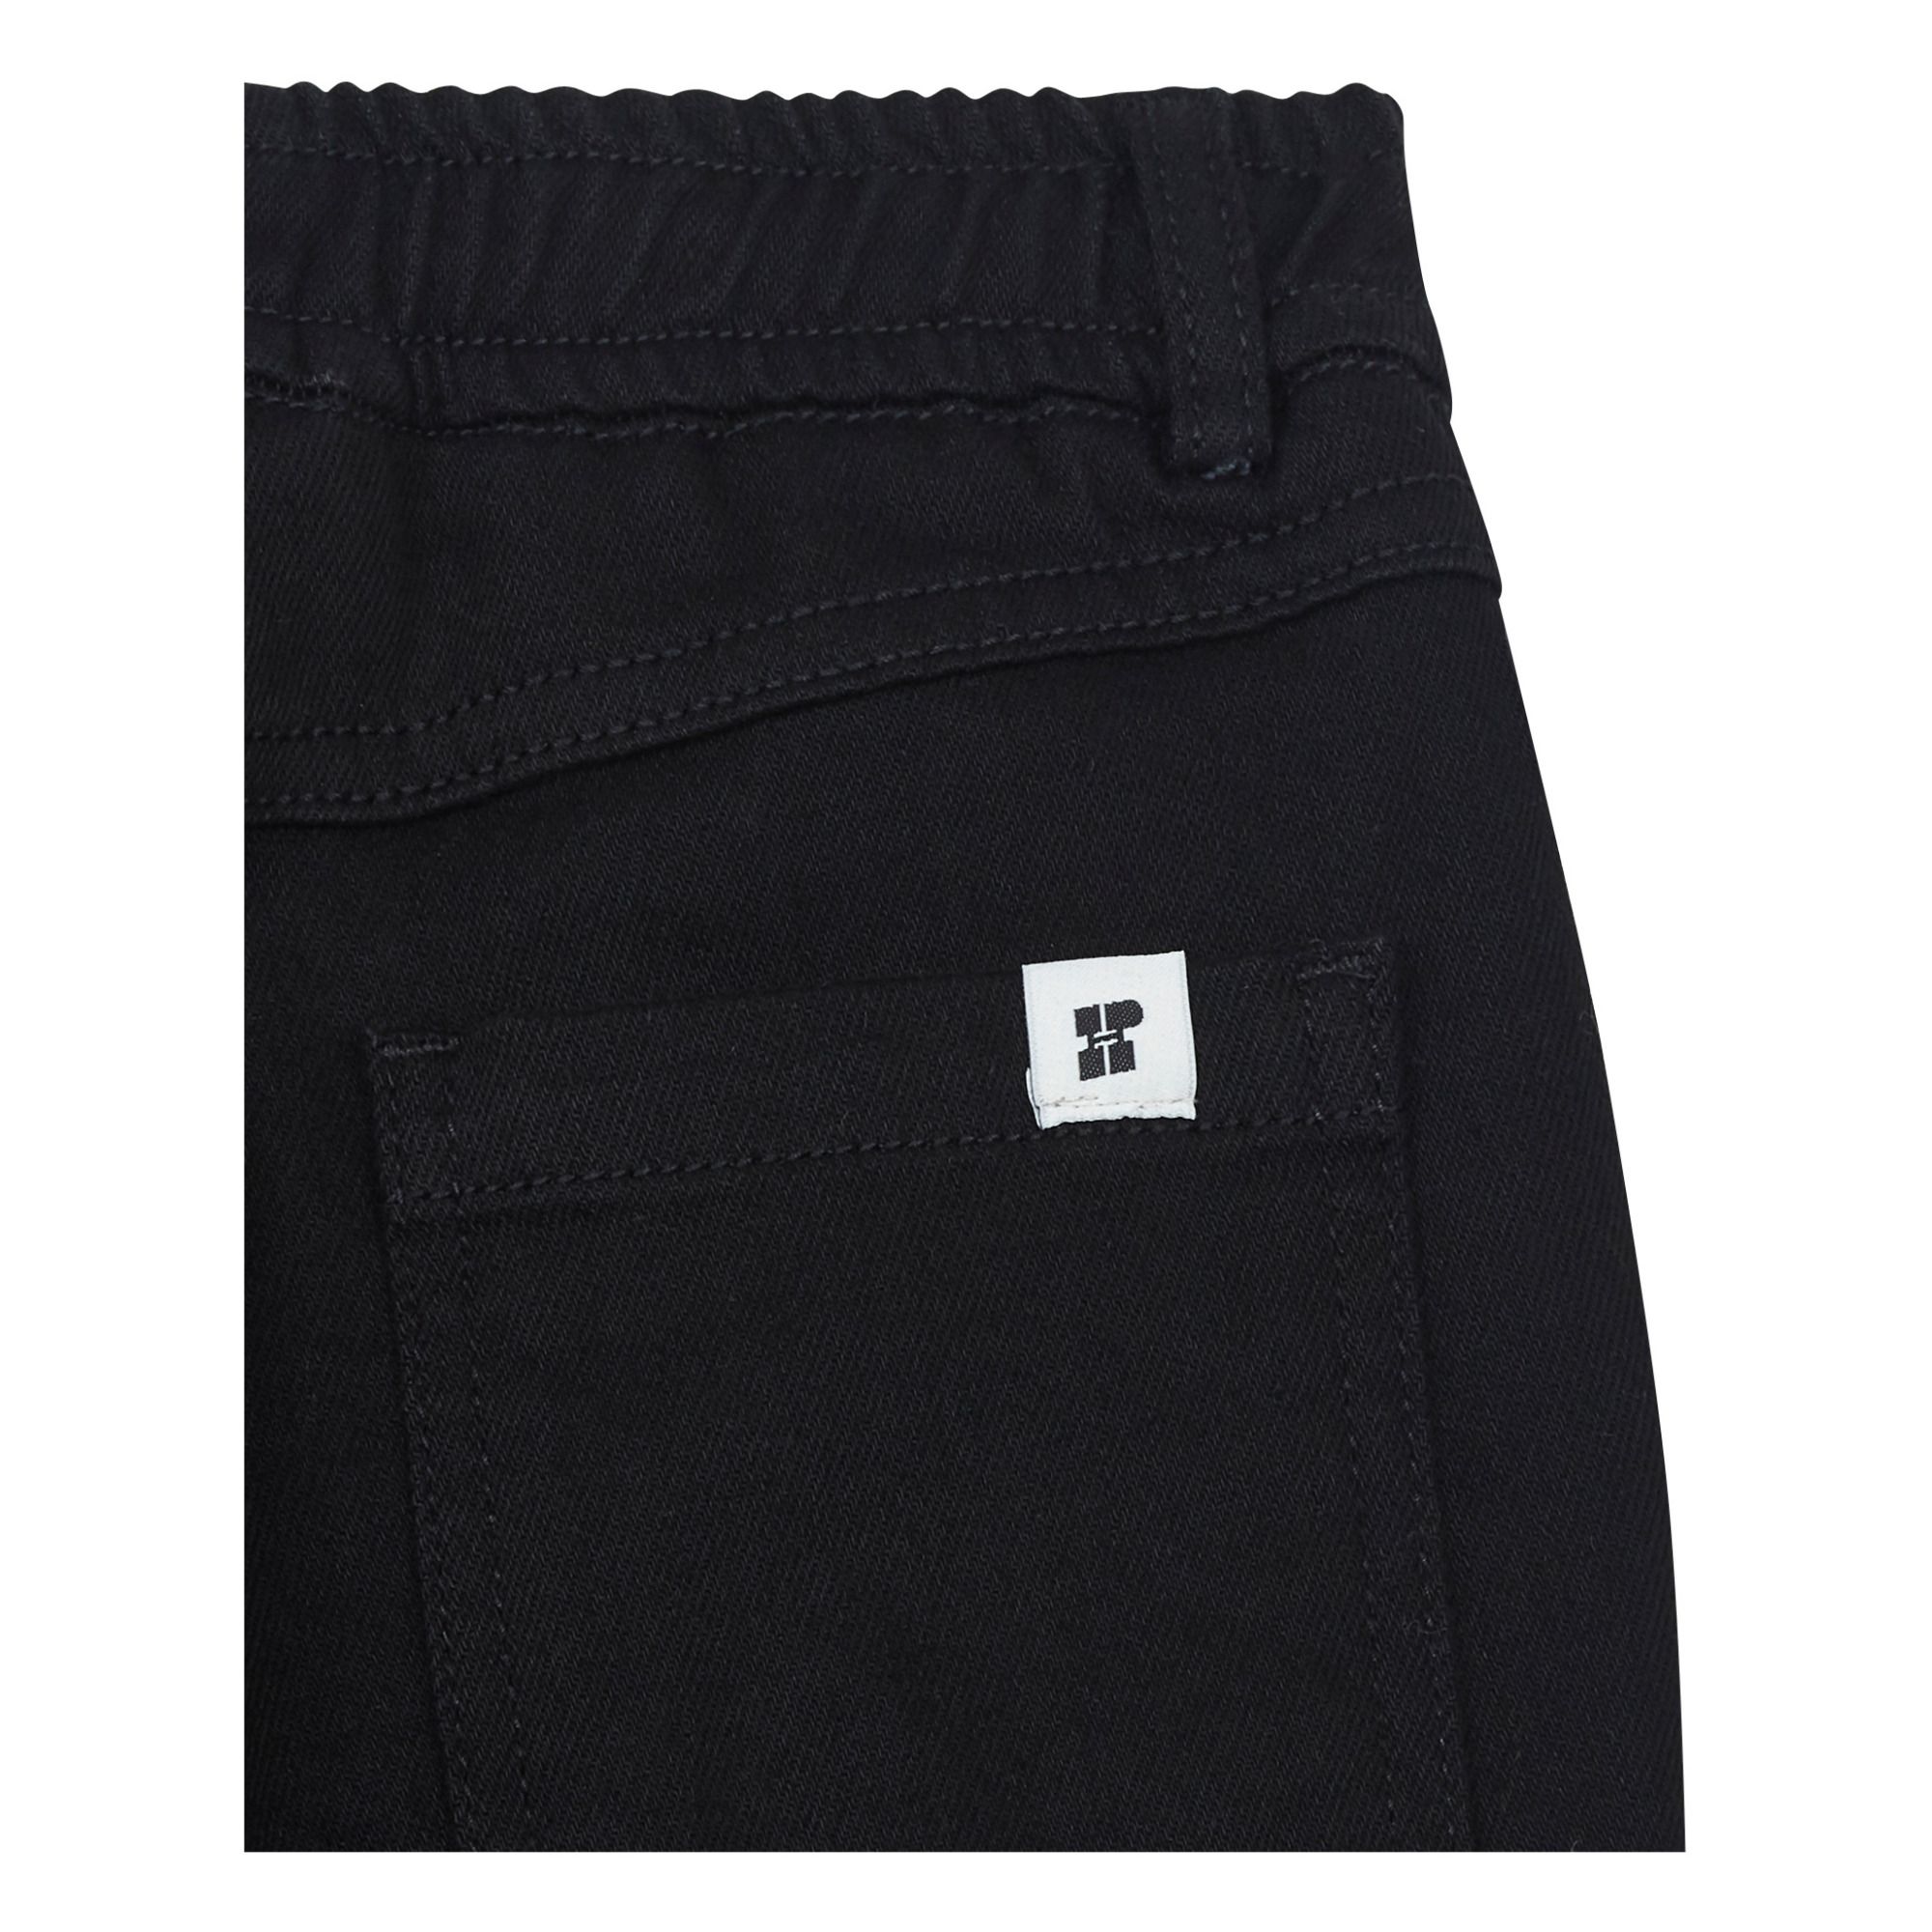 Pantalon Taille Eslatiquée Noir- Image produit n°1